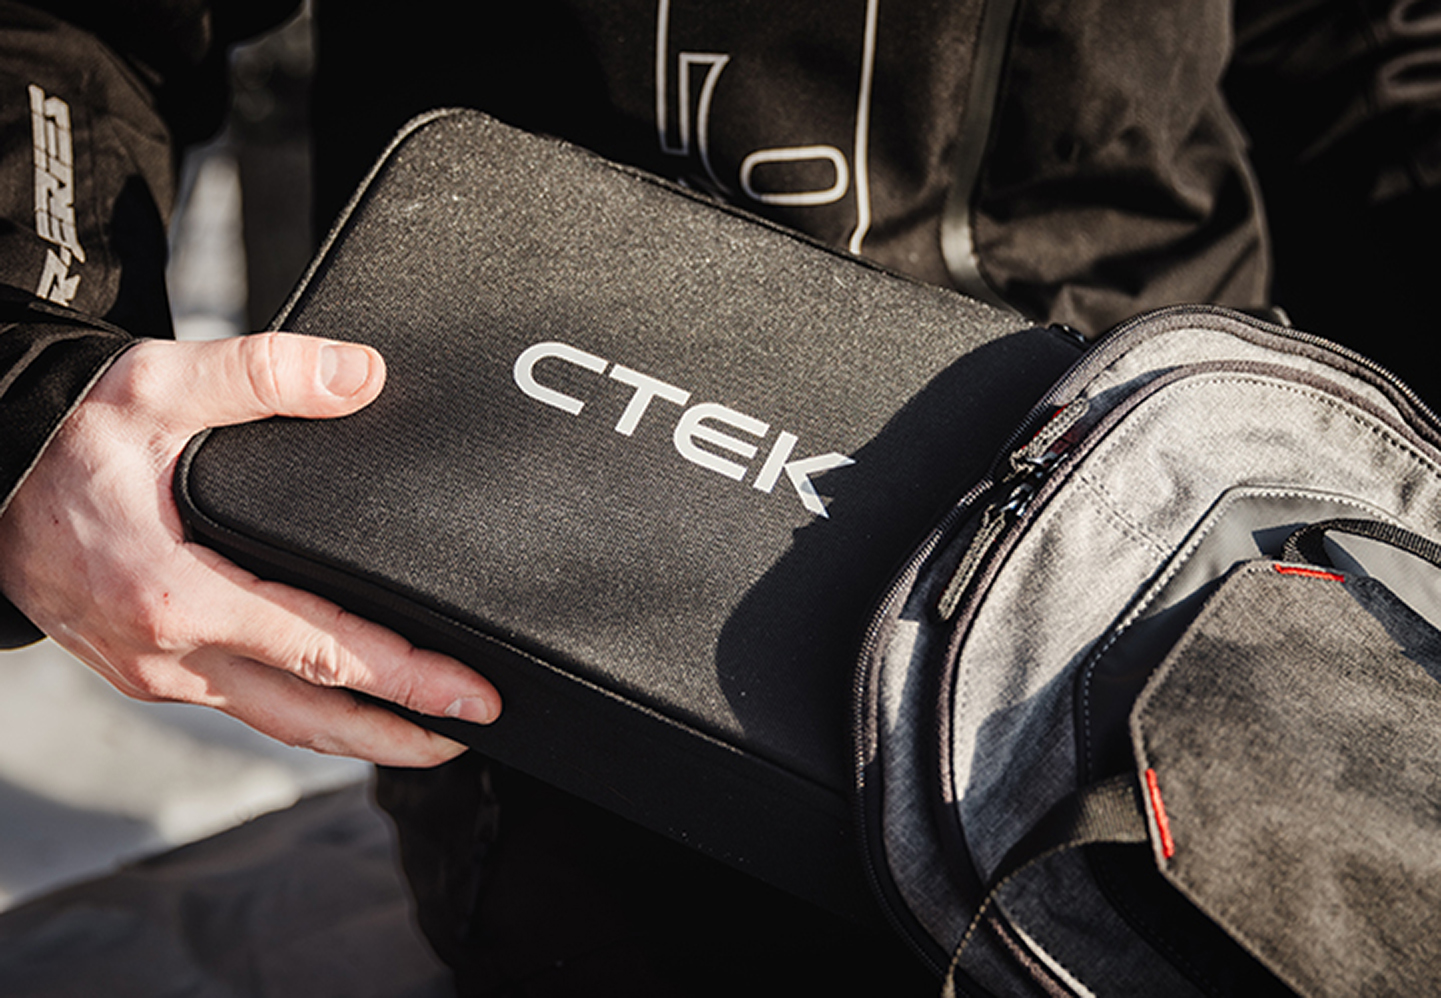 CTEK CS FREE Cargador portátil multifuncional 4 en 1 de 12 V con tecnología de arranque adaptativo, referencia 40-462 - ctek.com